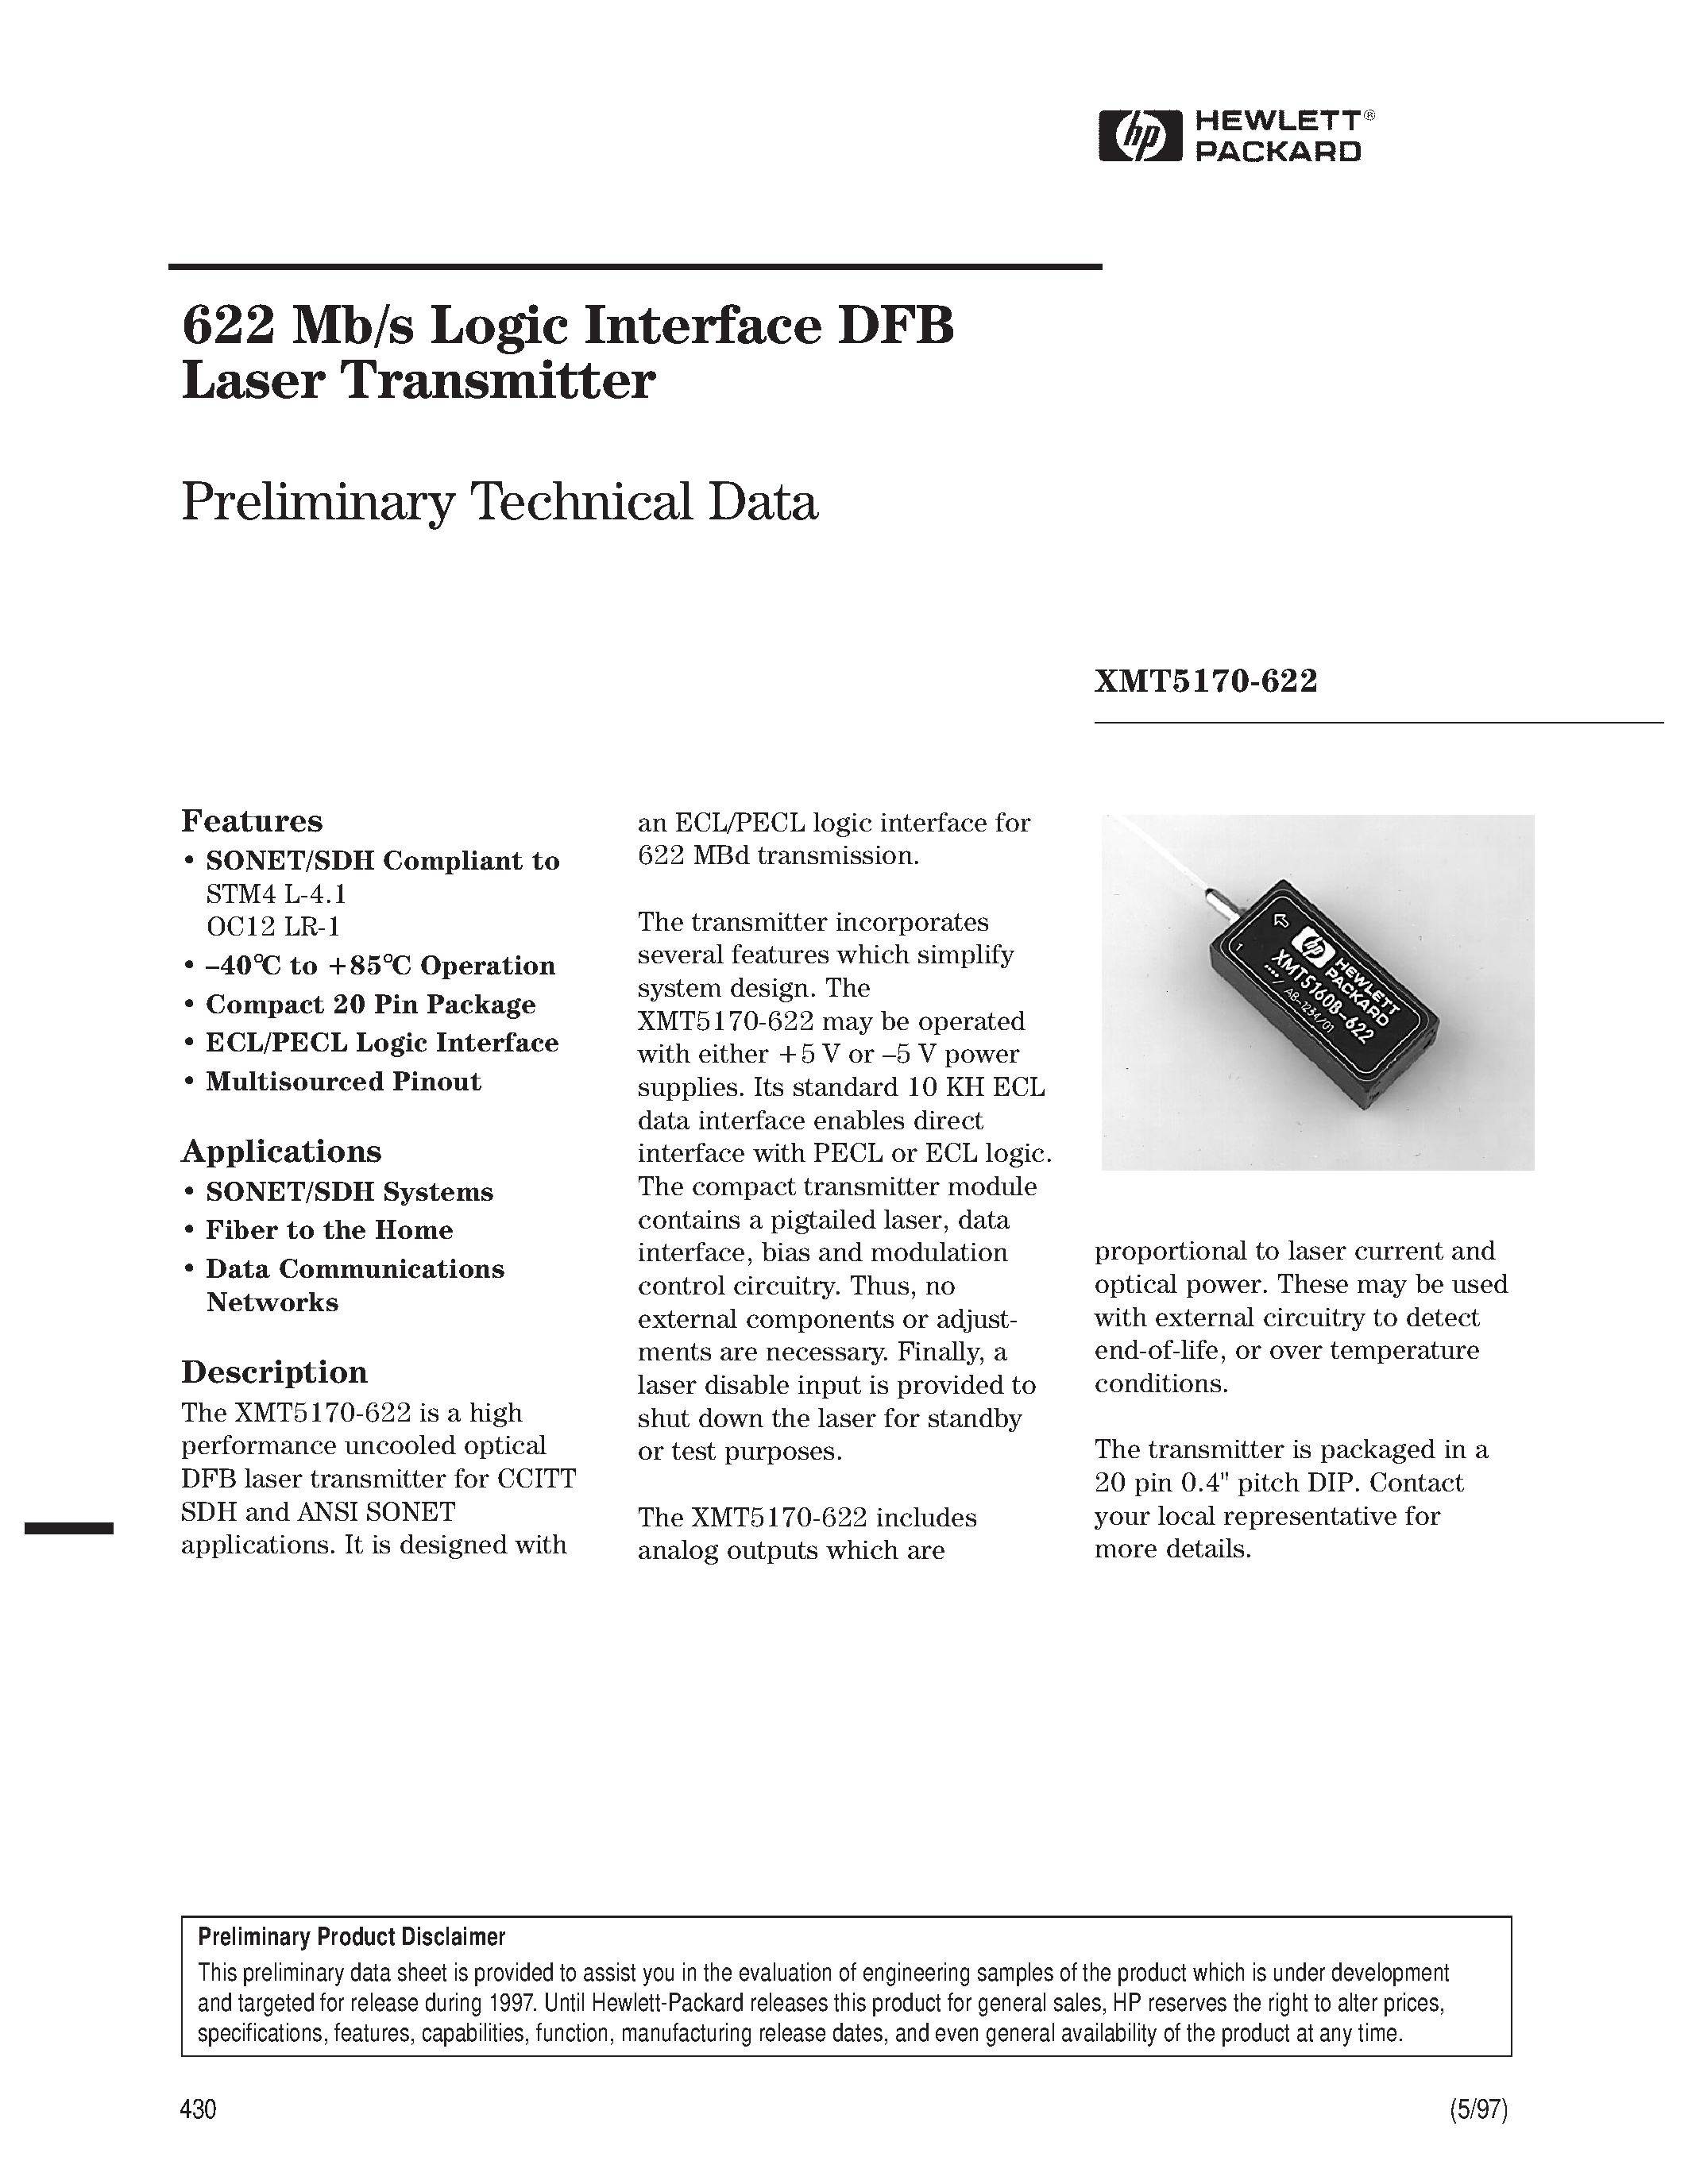 Datasheet XMT5170A-622-AS - 622 Mb/s Logic Interface DFB Laser Transmitter page 1